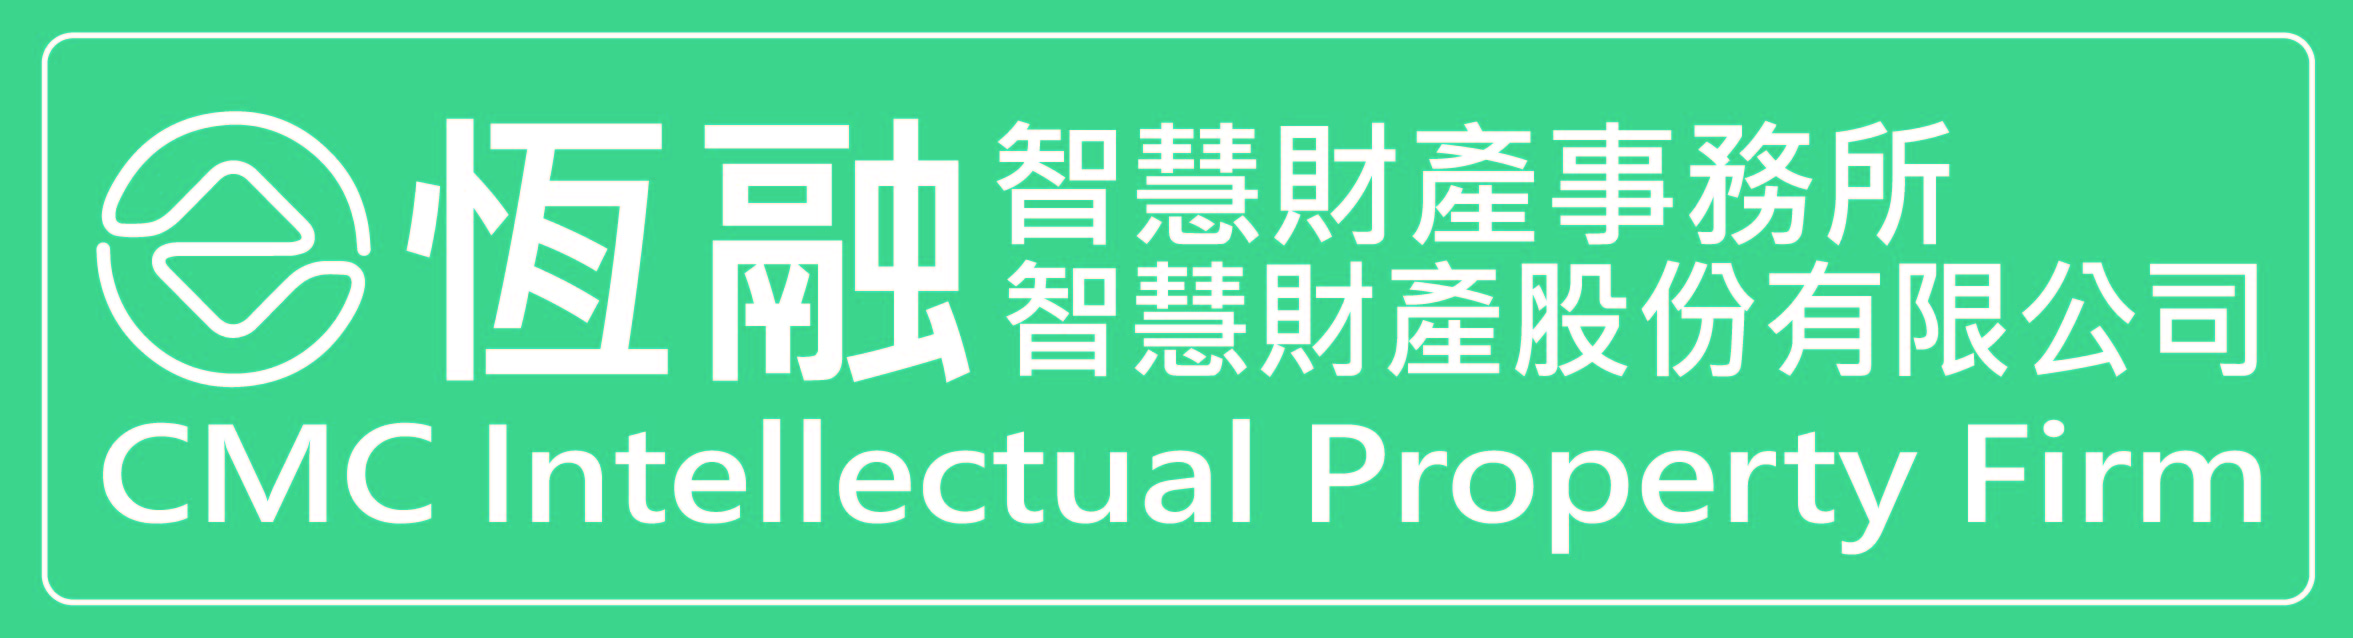 恆融智慧財產事務所 CMC Intellectual Property Firm